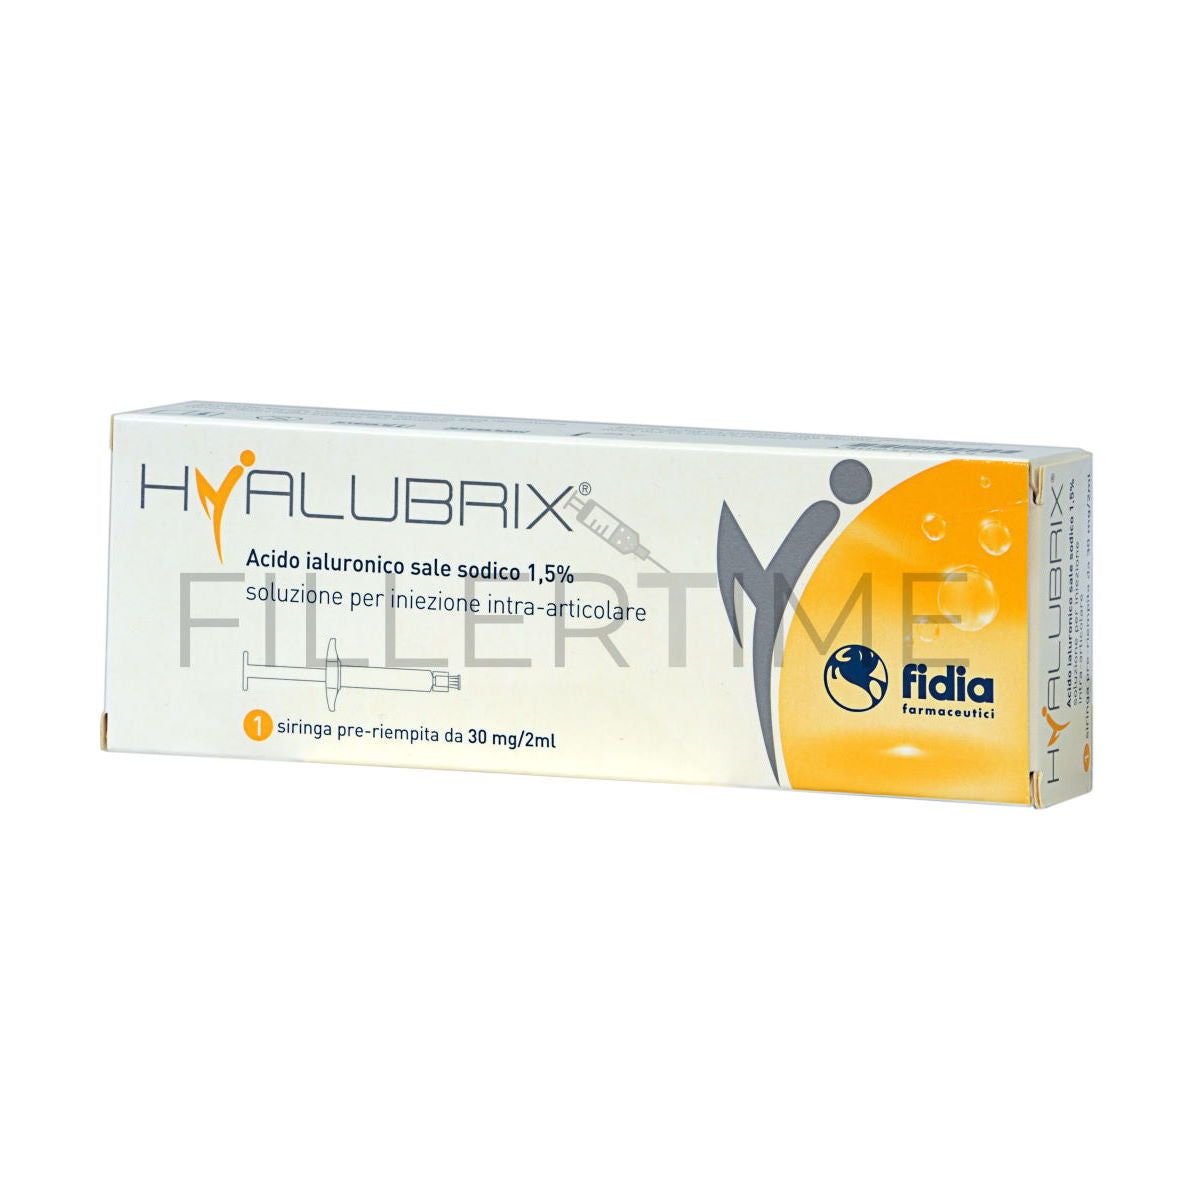 Hyalubrix 30
Contiene 1 siringa da 2ml
Indicato per ripristinare le proprietà visco-elastiche del liquido presente nelle articolazioni, riducendo così la sensazione di dolore e spesso anche la difficoltà di movimento. Consigliato per combattere l'artrosi.